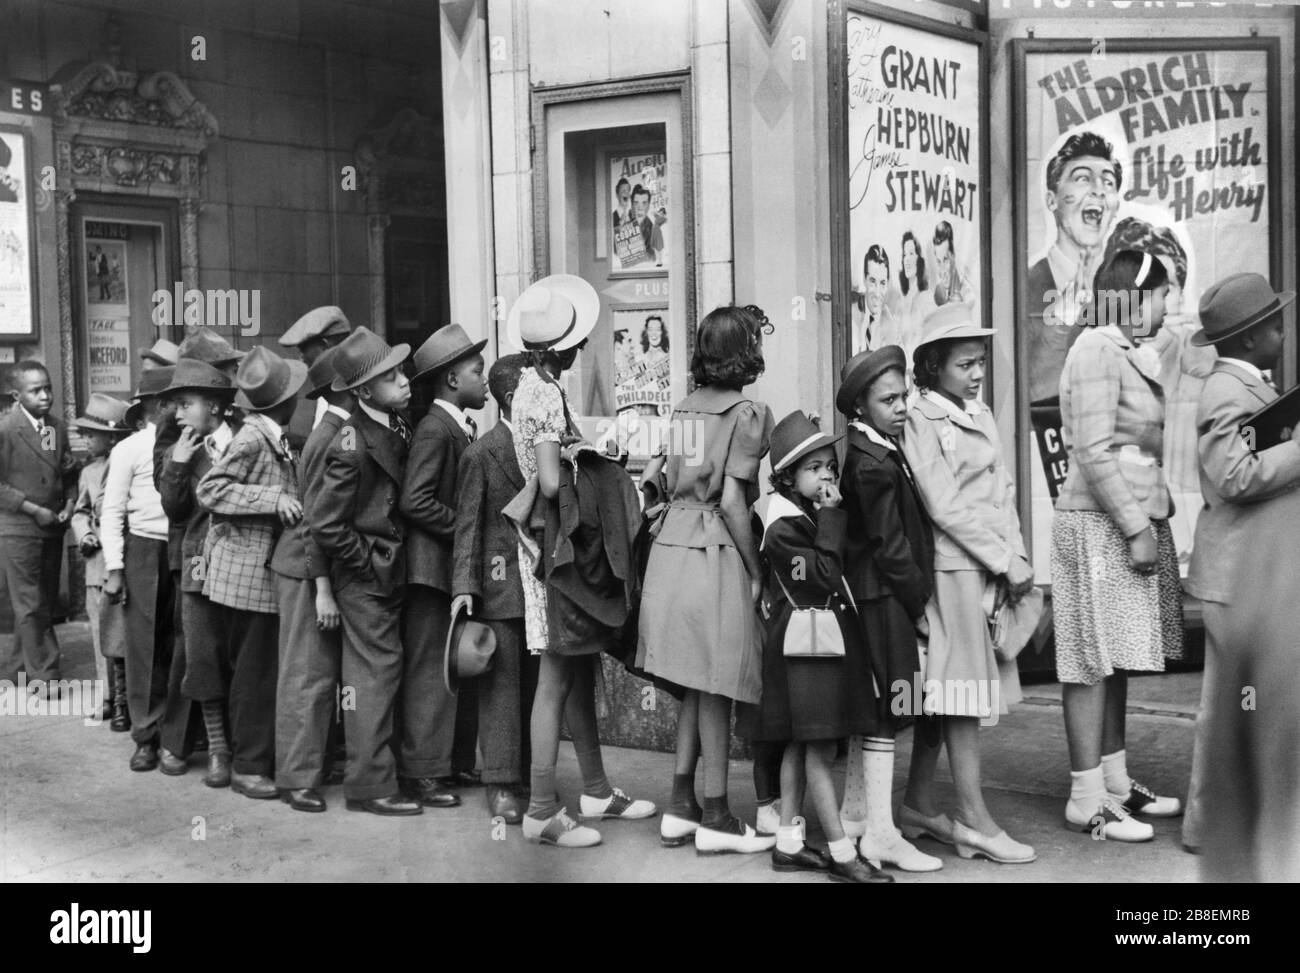 Niños frente a Moving Picture Theatre, Domingo de Pascua Matinee, Black Belt, Chicago, Illinois, EE.UU., Edwin Rosskam para la Administración de Seguridad Agrícola de EE.UU., abril de 1941 Foto de stock